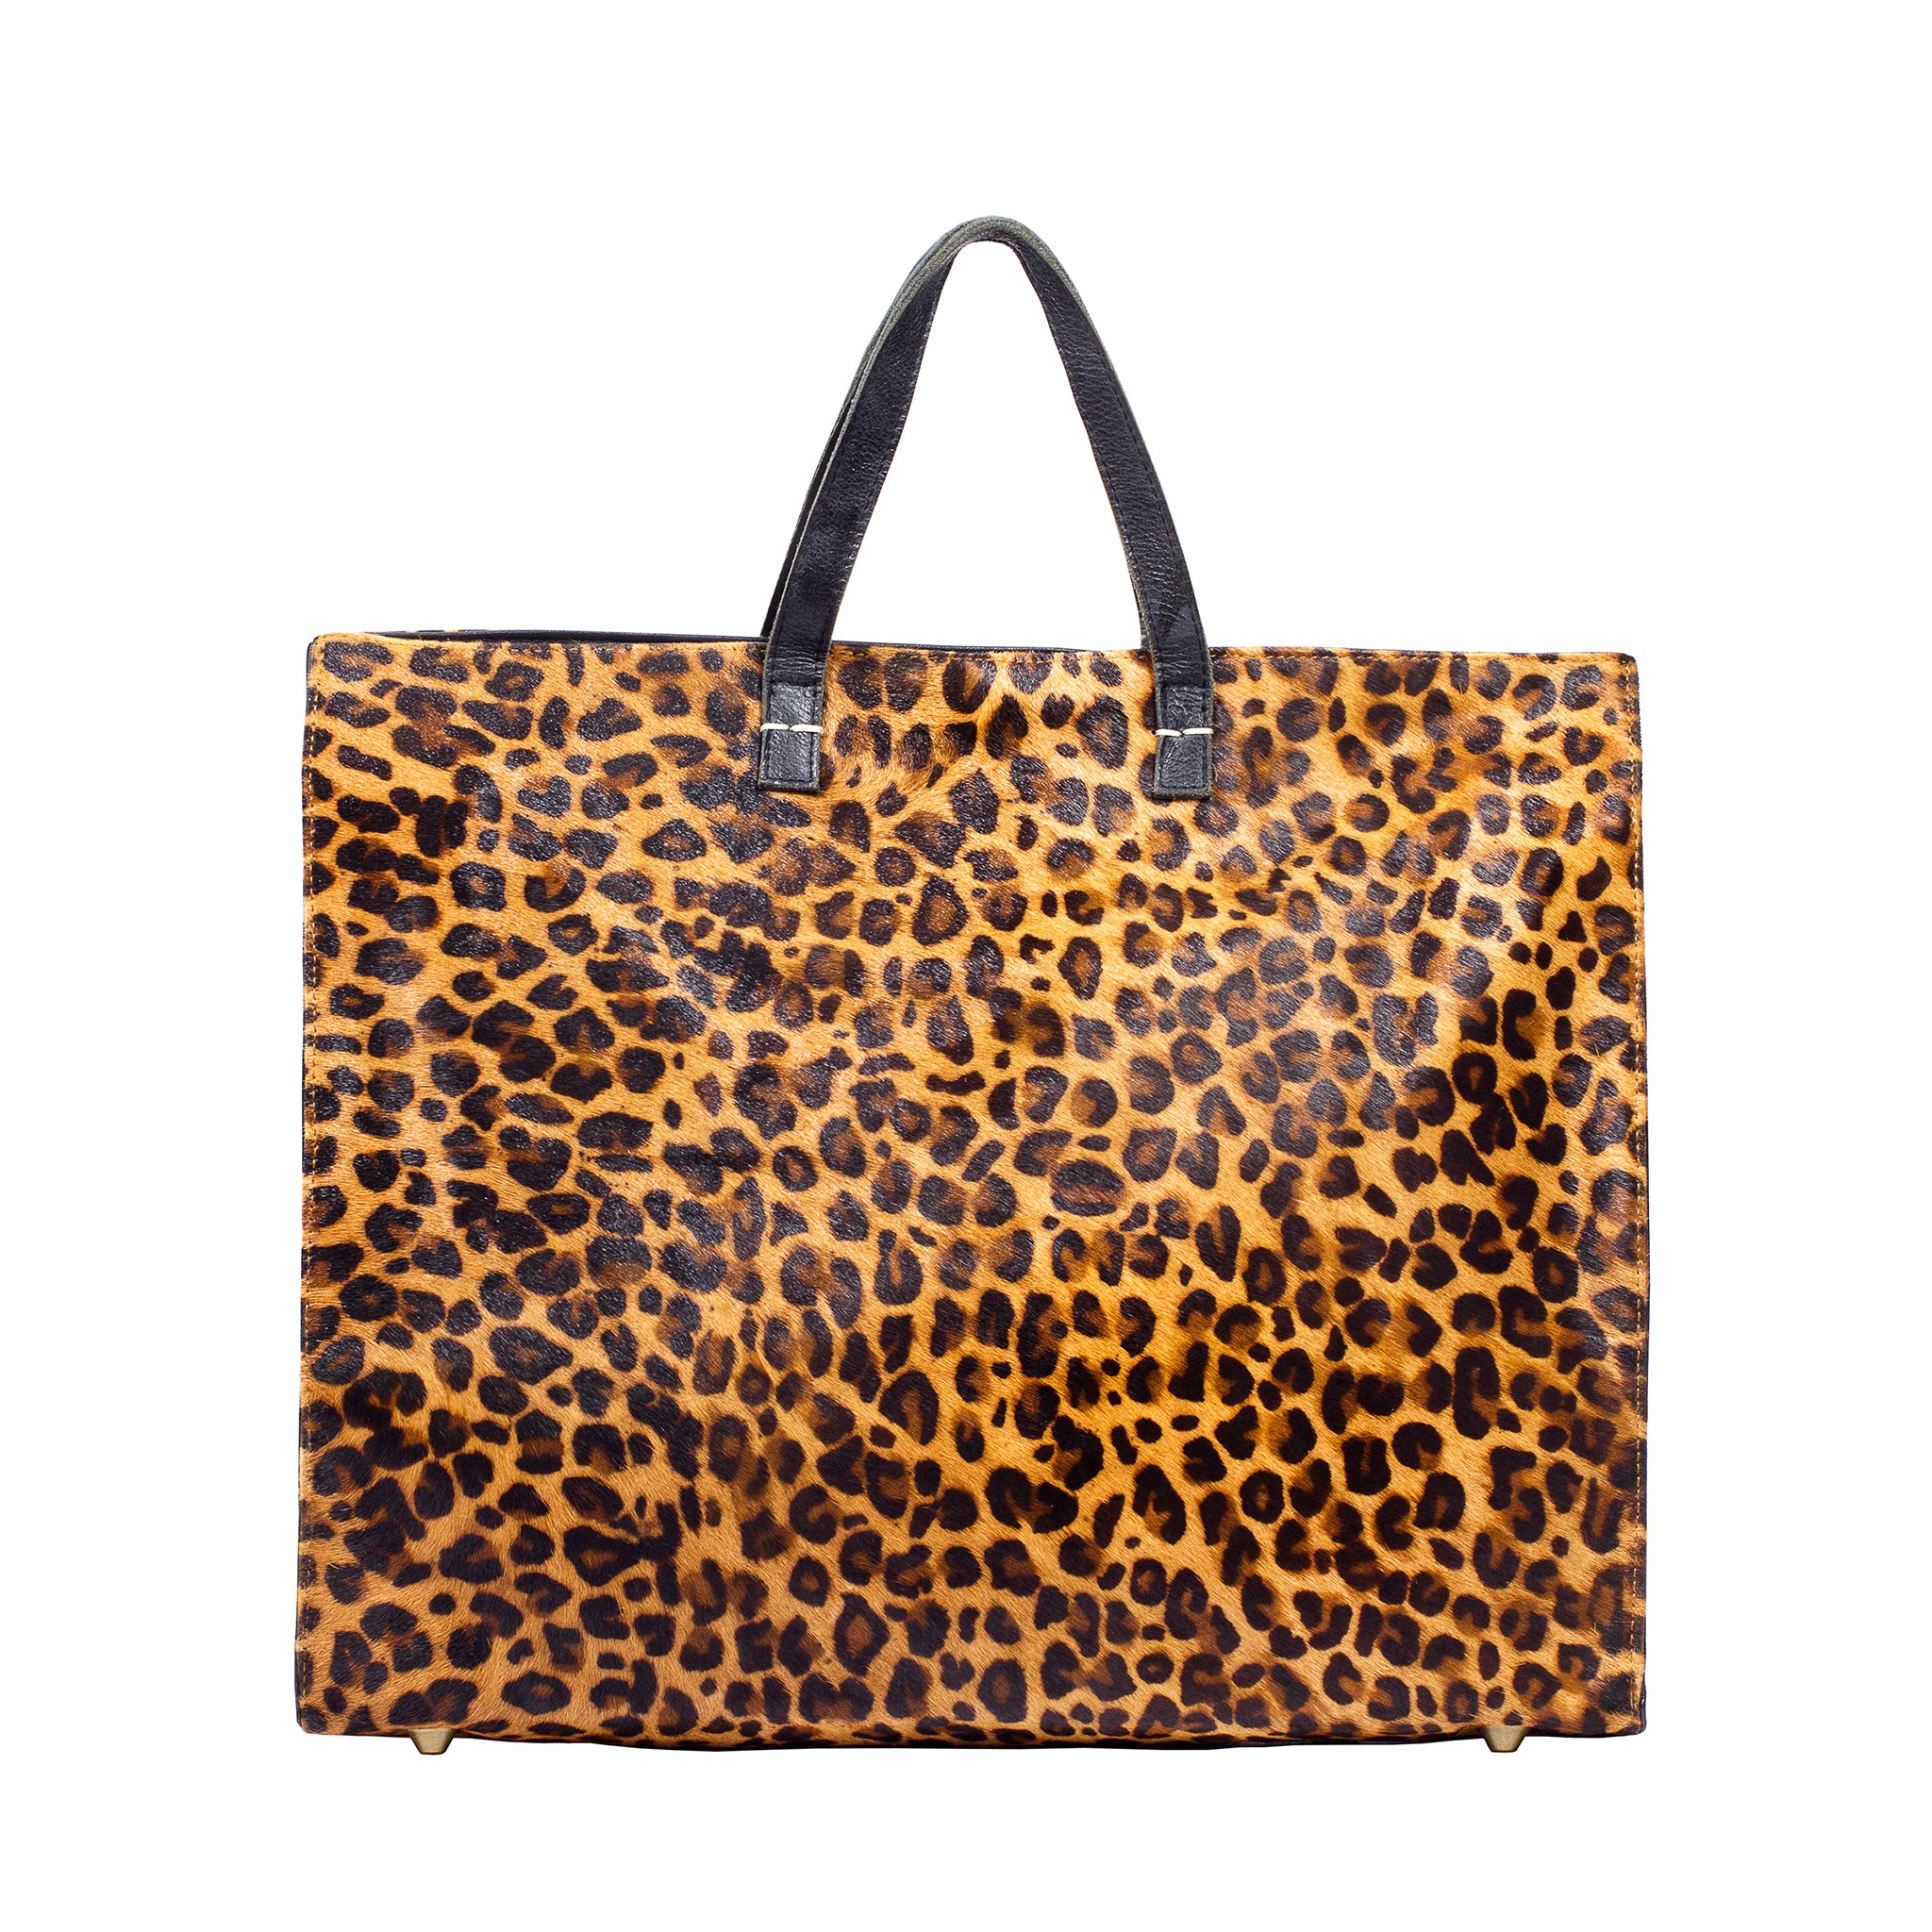 Animal Print Tote; Leopard Print Tote Bag; Tote; Leather Tote; Travel Tote; Printed Tote Handbag; Affordable Tote Bags; Clare V Tote Handbag; Cheetah Print Tote Bag